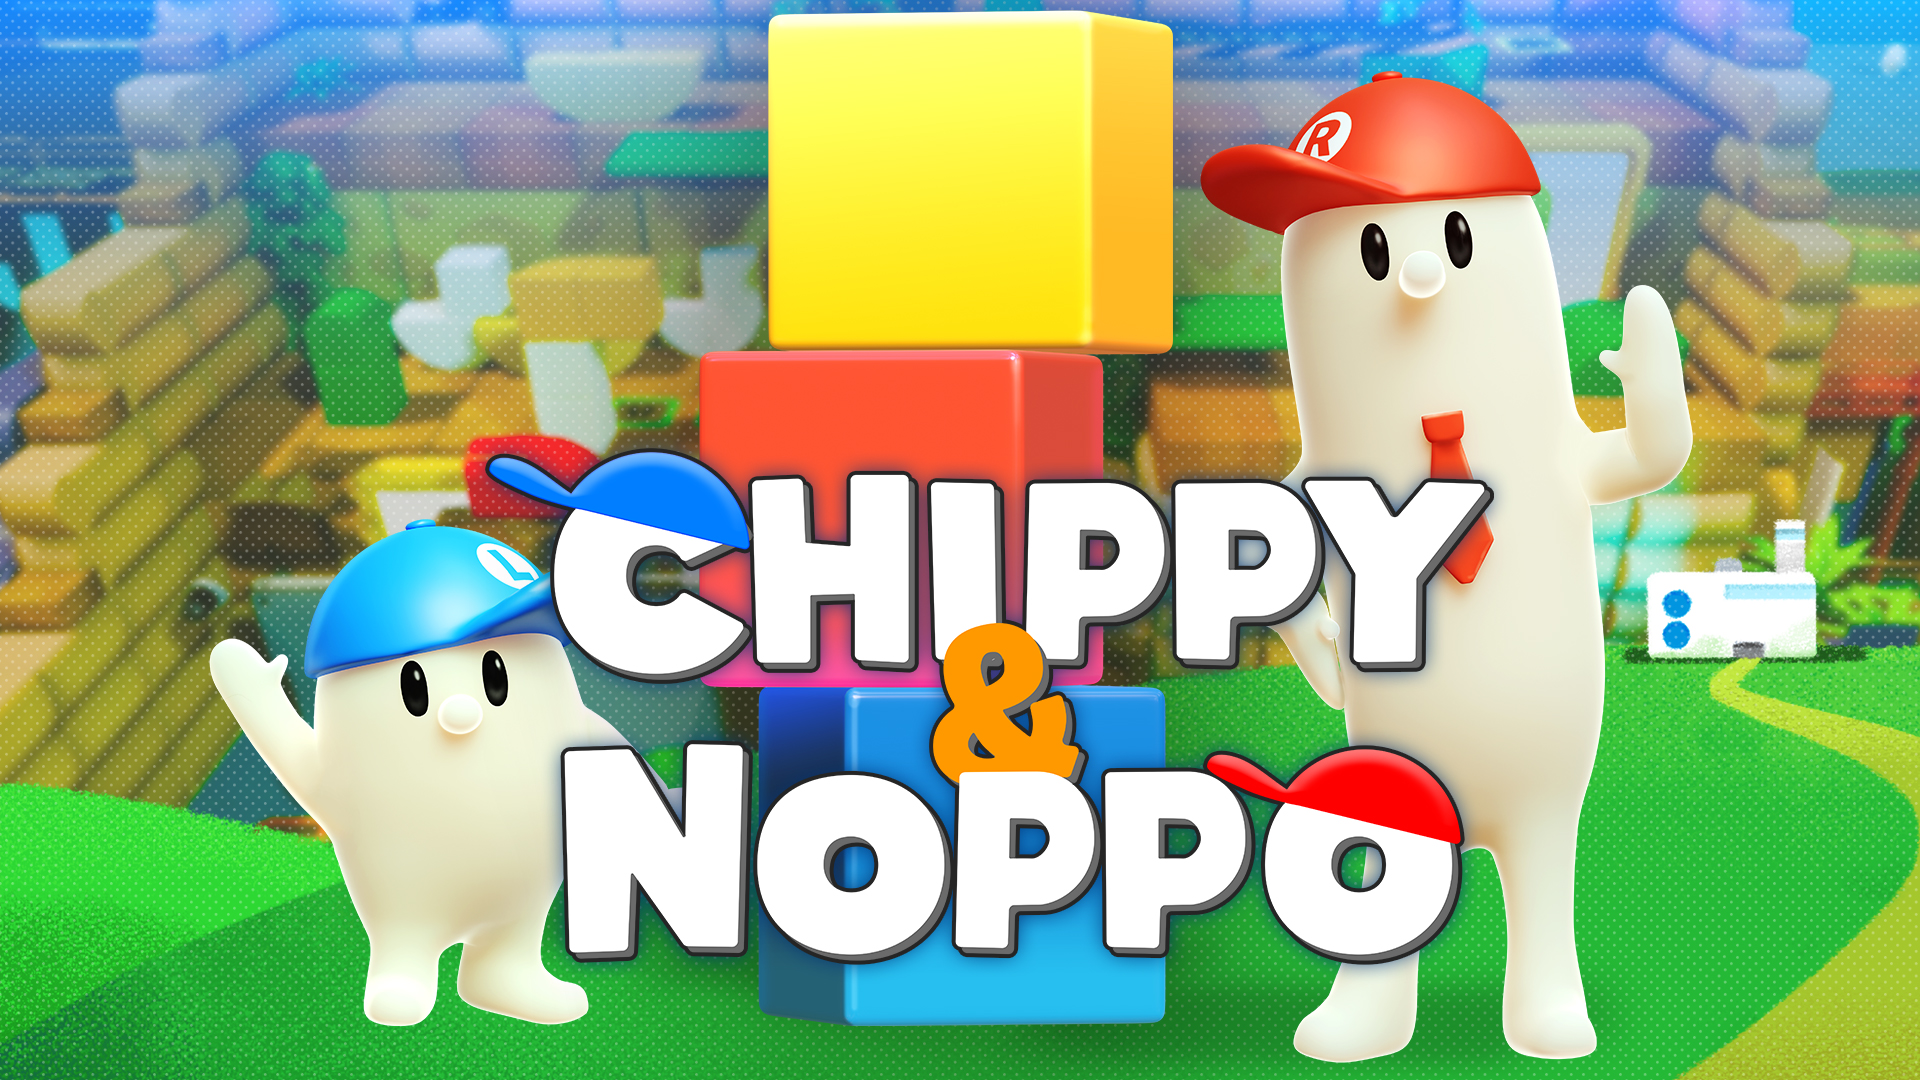 Chippy&Noppo